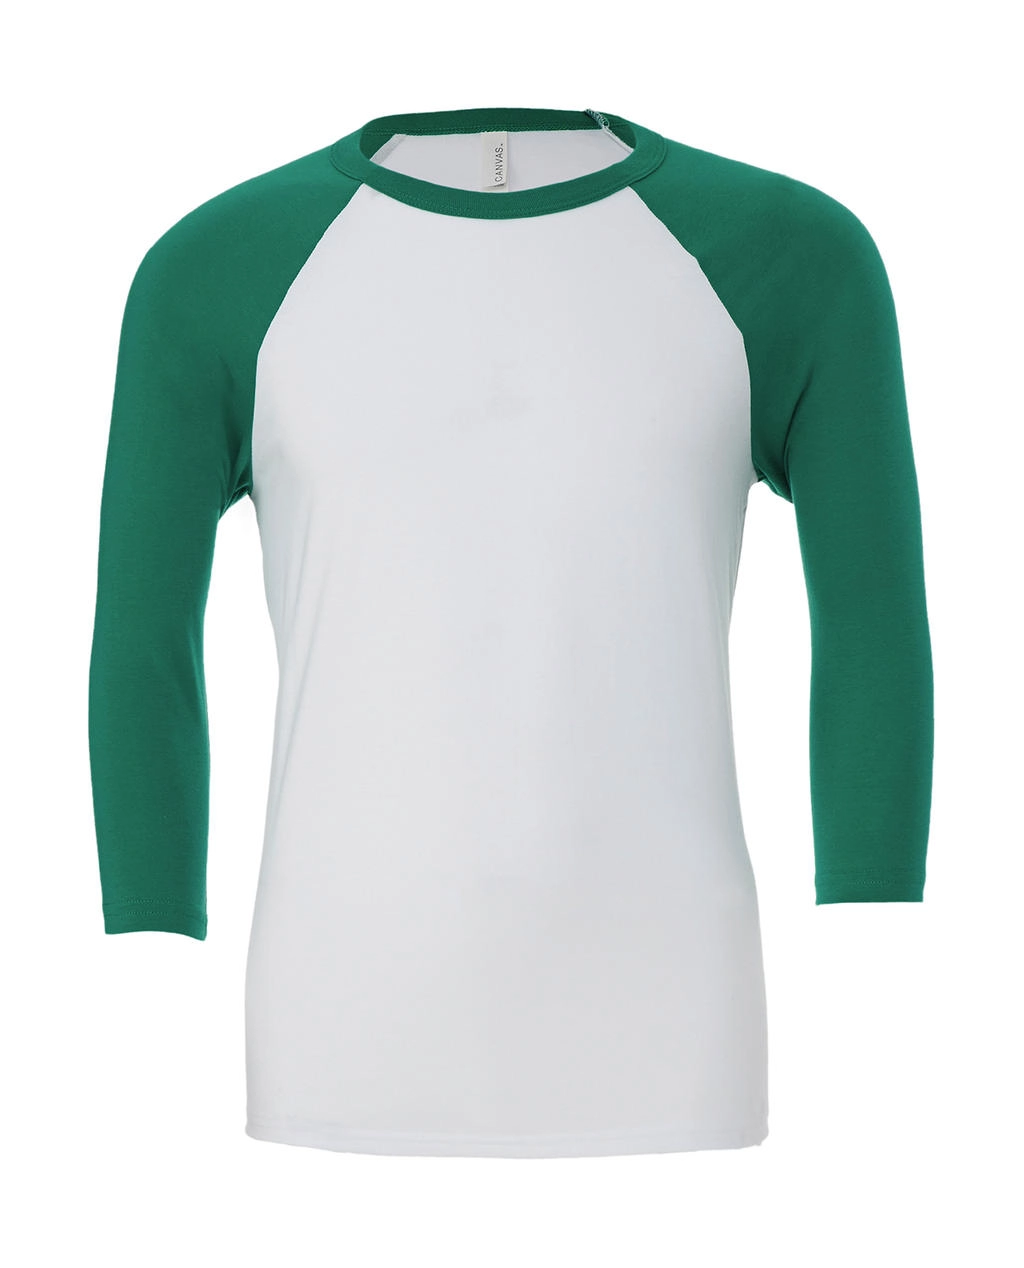 Unisex 3/4 Sleeve Baseball T-Shirt zum Besticken und Bedrucken in der Farbe White/Kelly Green mit Ihren Logo, Schriftzug oder Motiv.